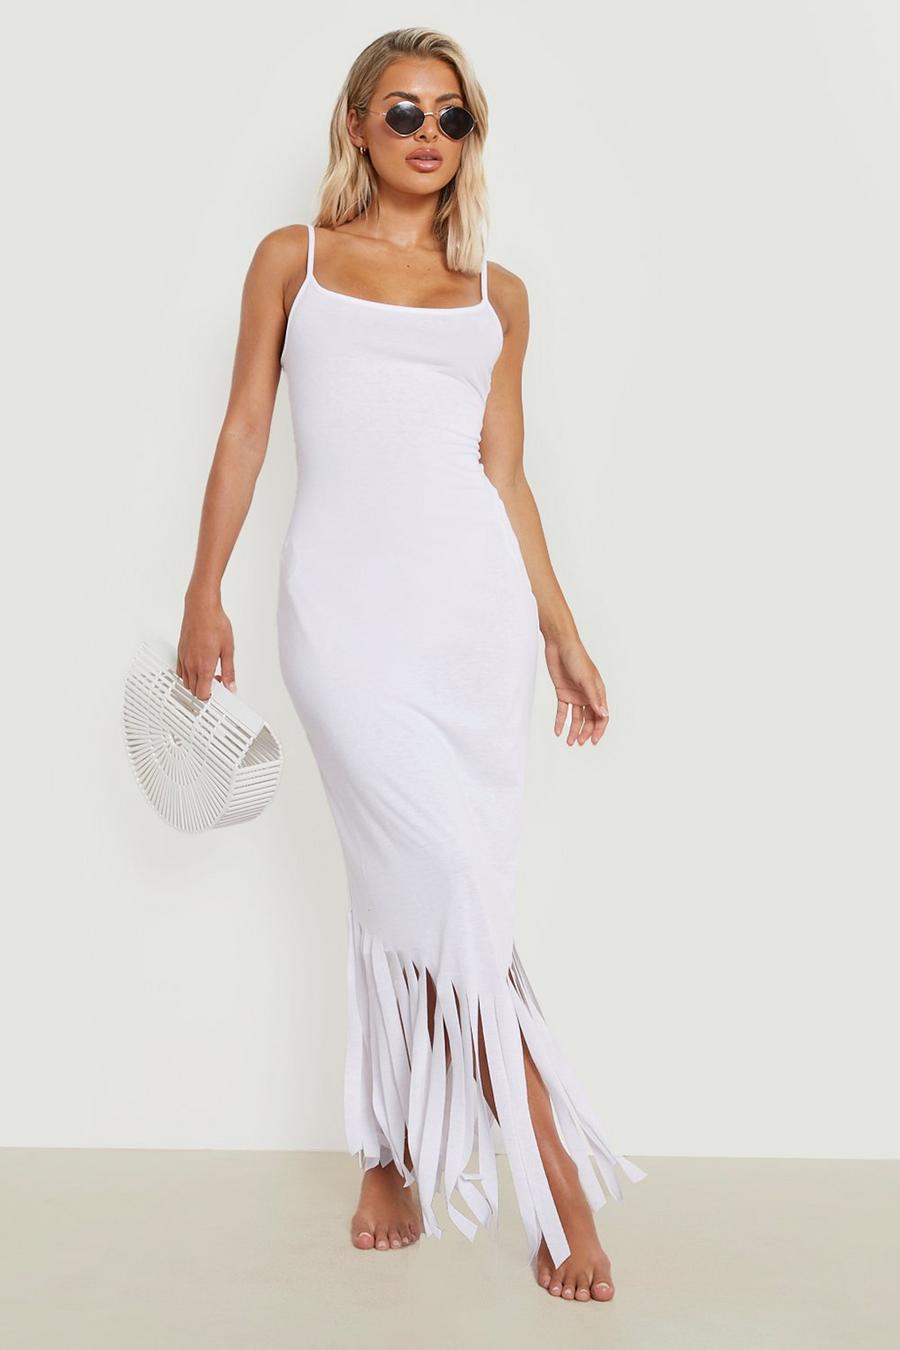 White Beach Dresses Uk Factory Sale | bellvalefarms.com